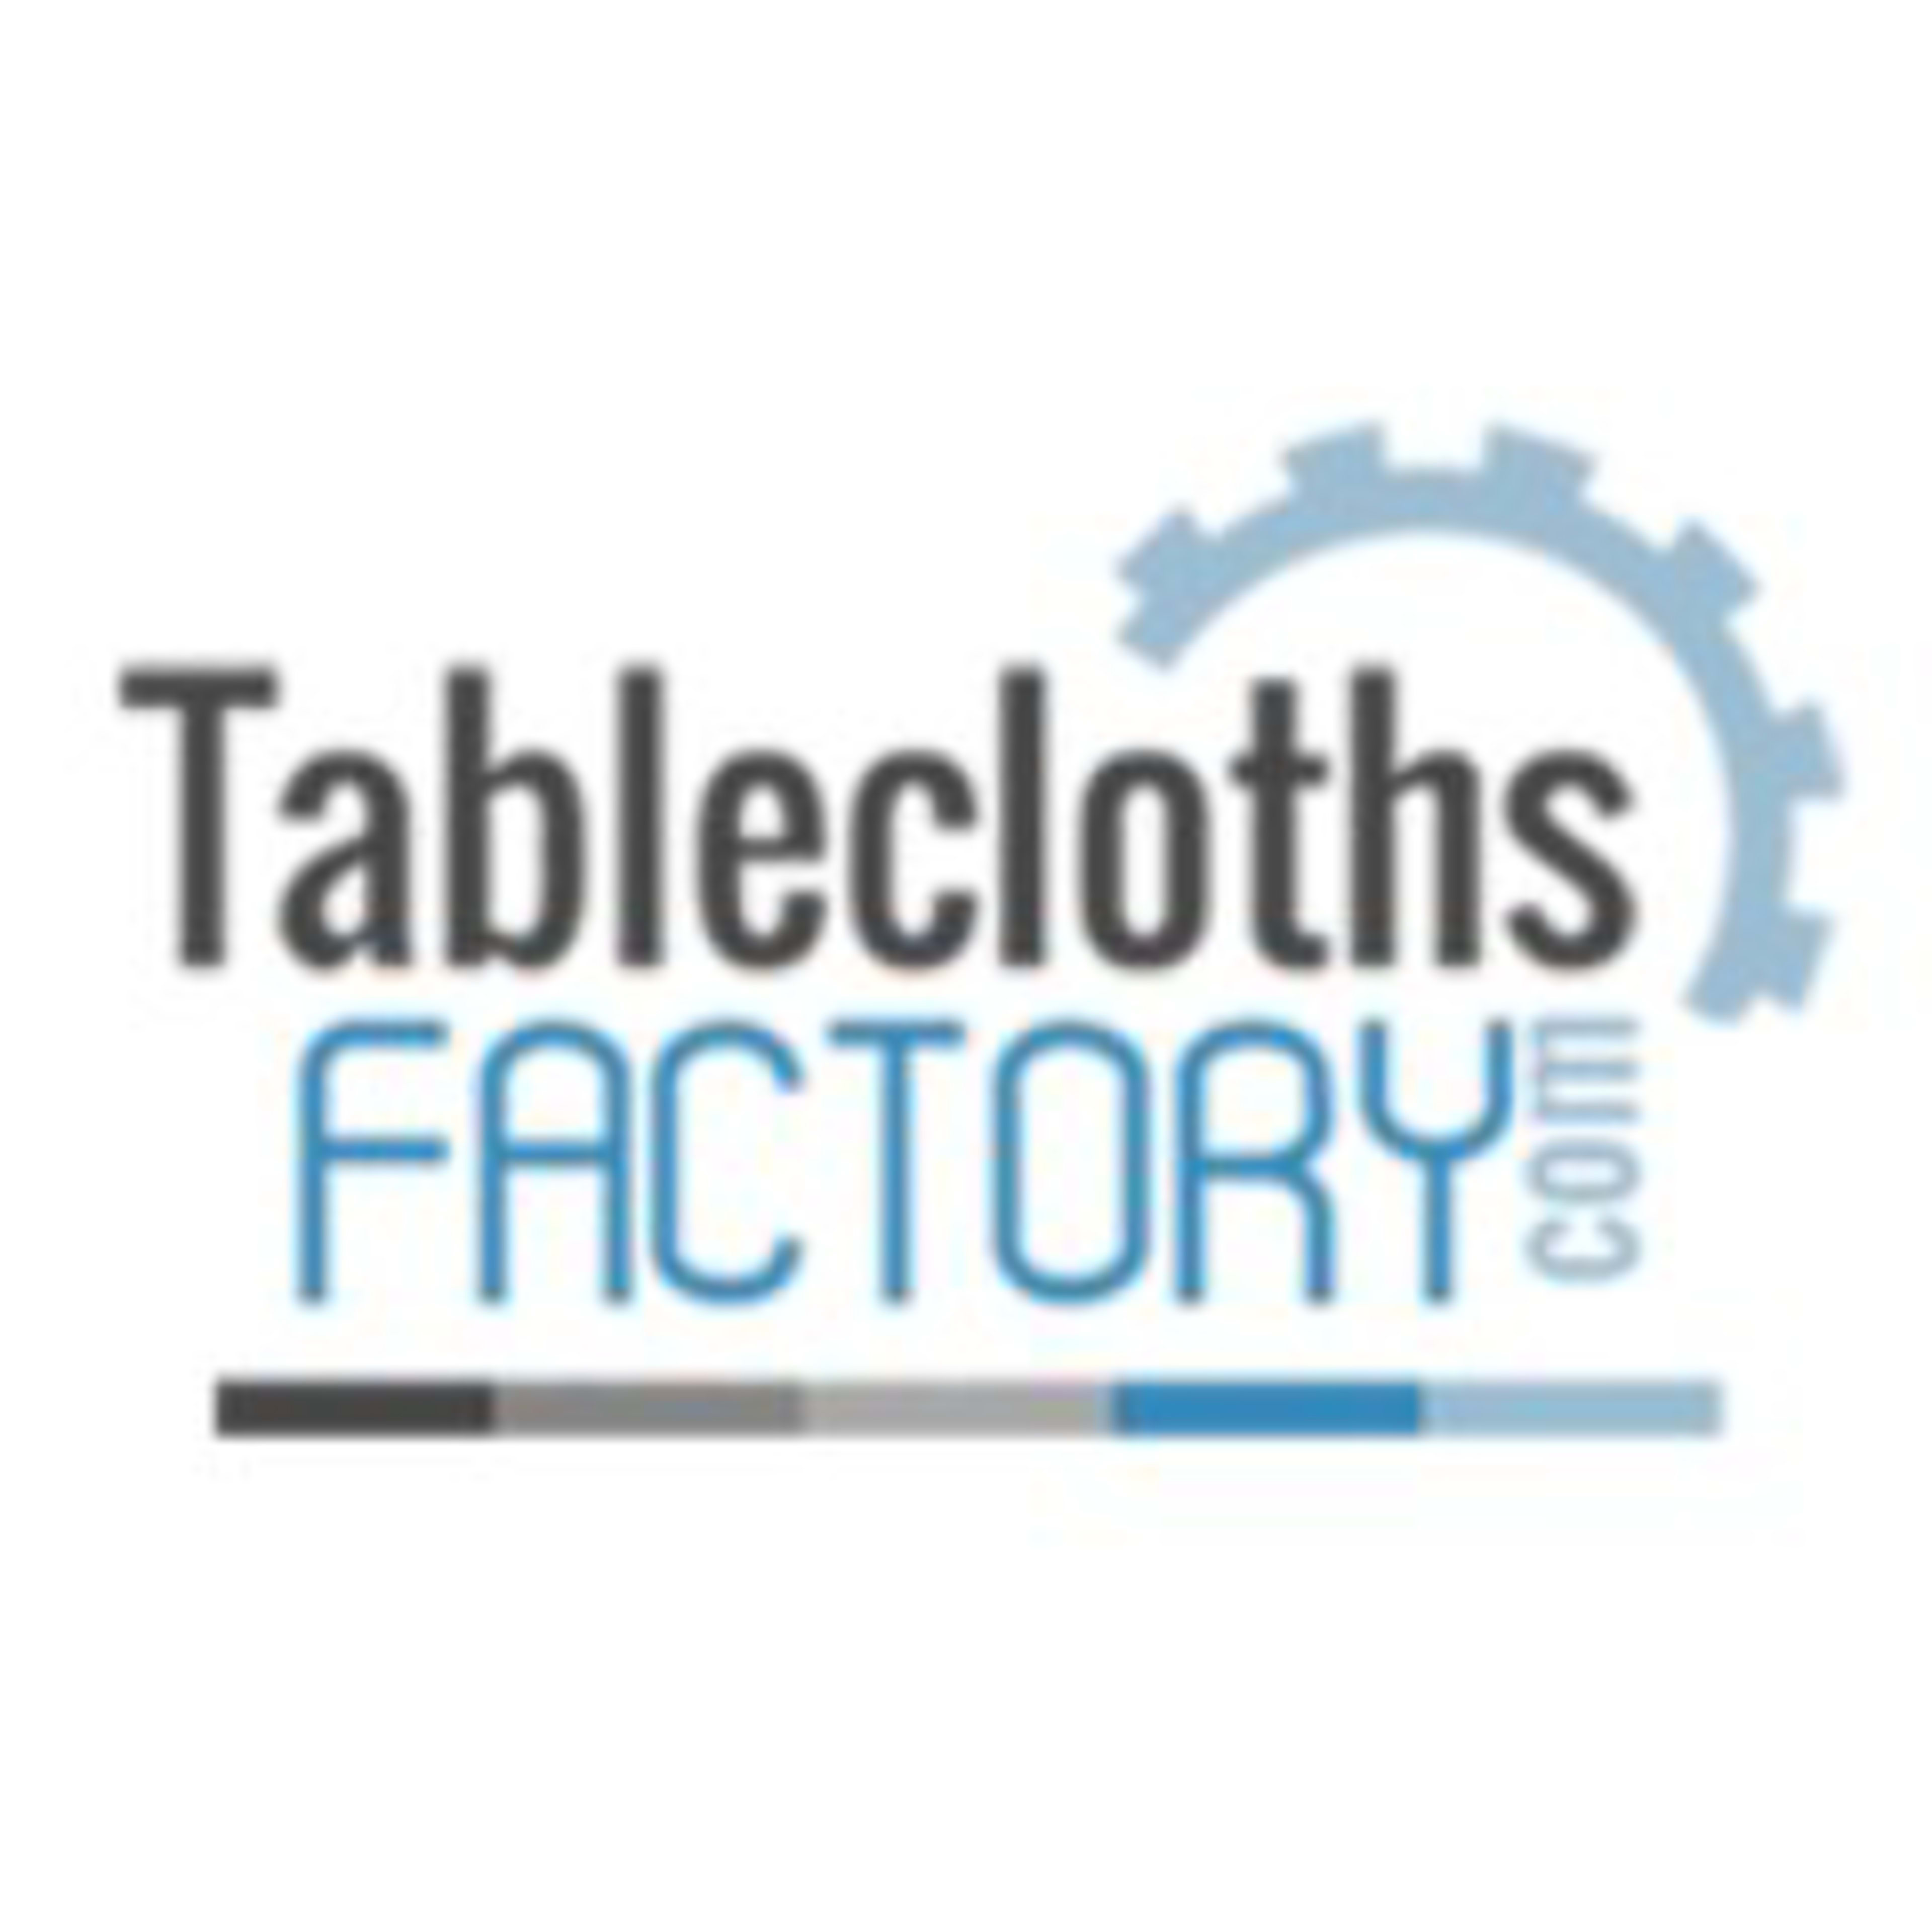 Tablecloths FactoryCode